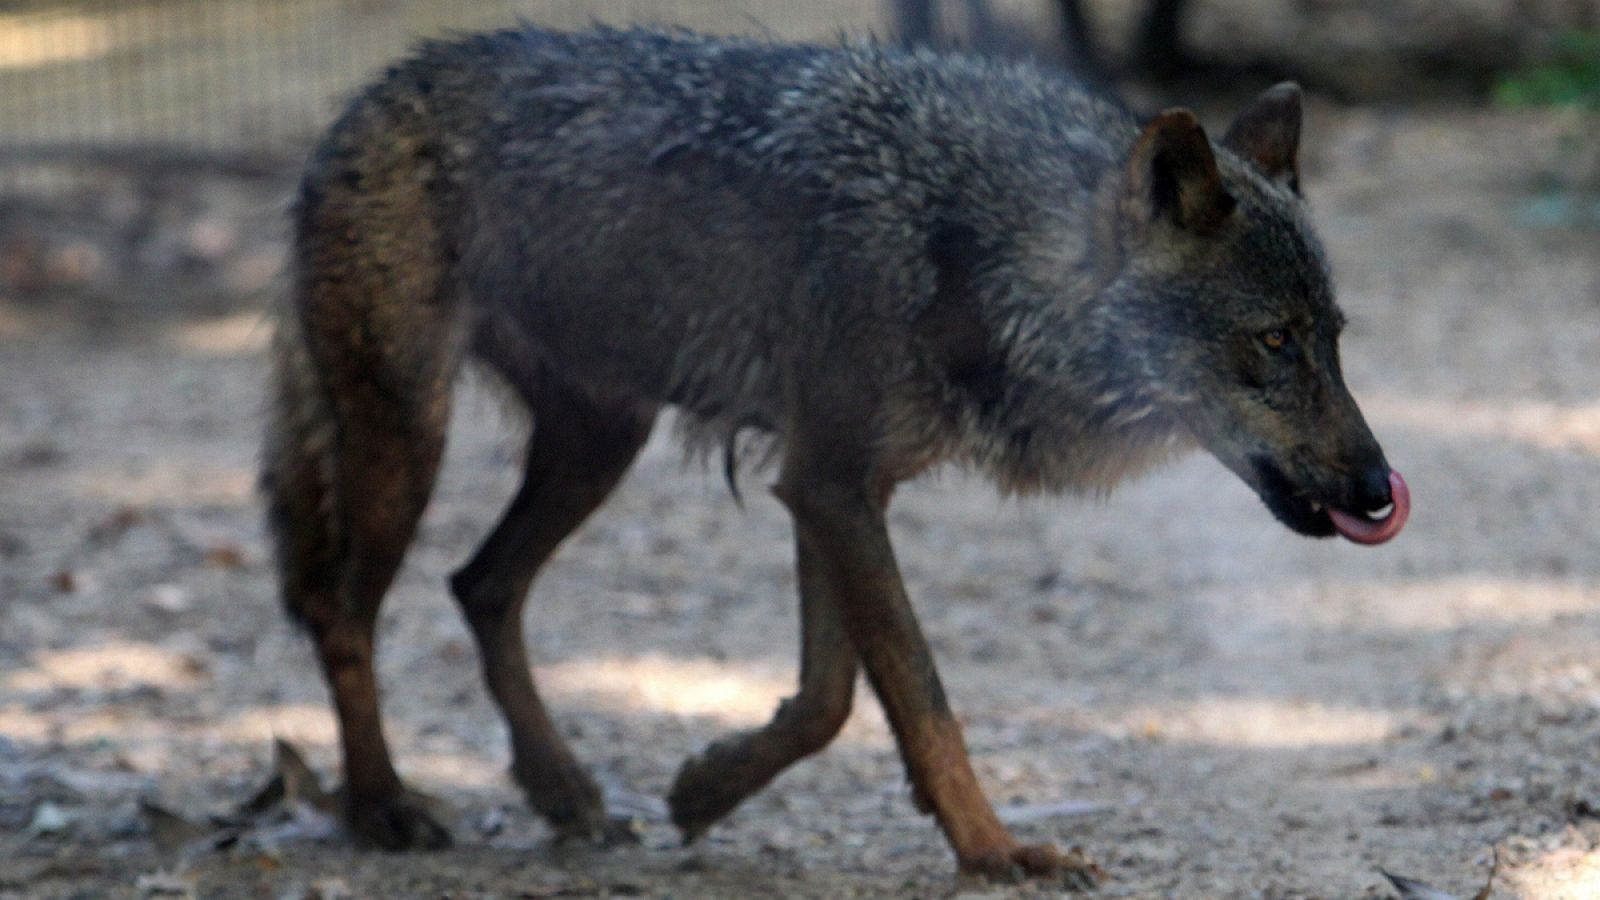 La drástica reducción del número de lobos ibéricos hasta la década de los 70 en España tuvo un fuerte impacto biológico